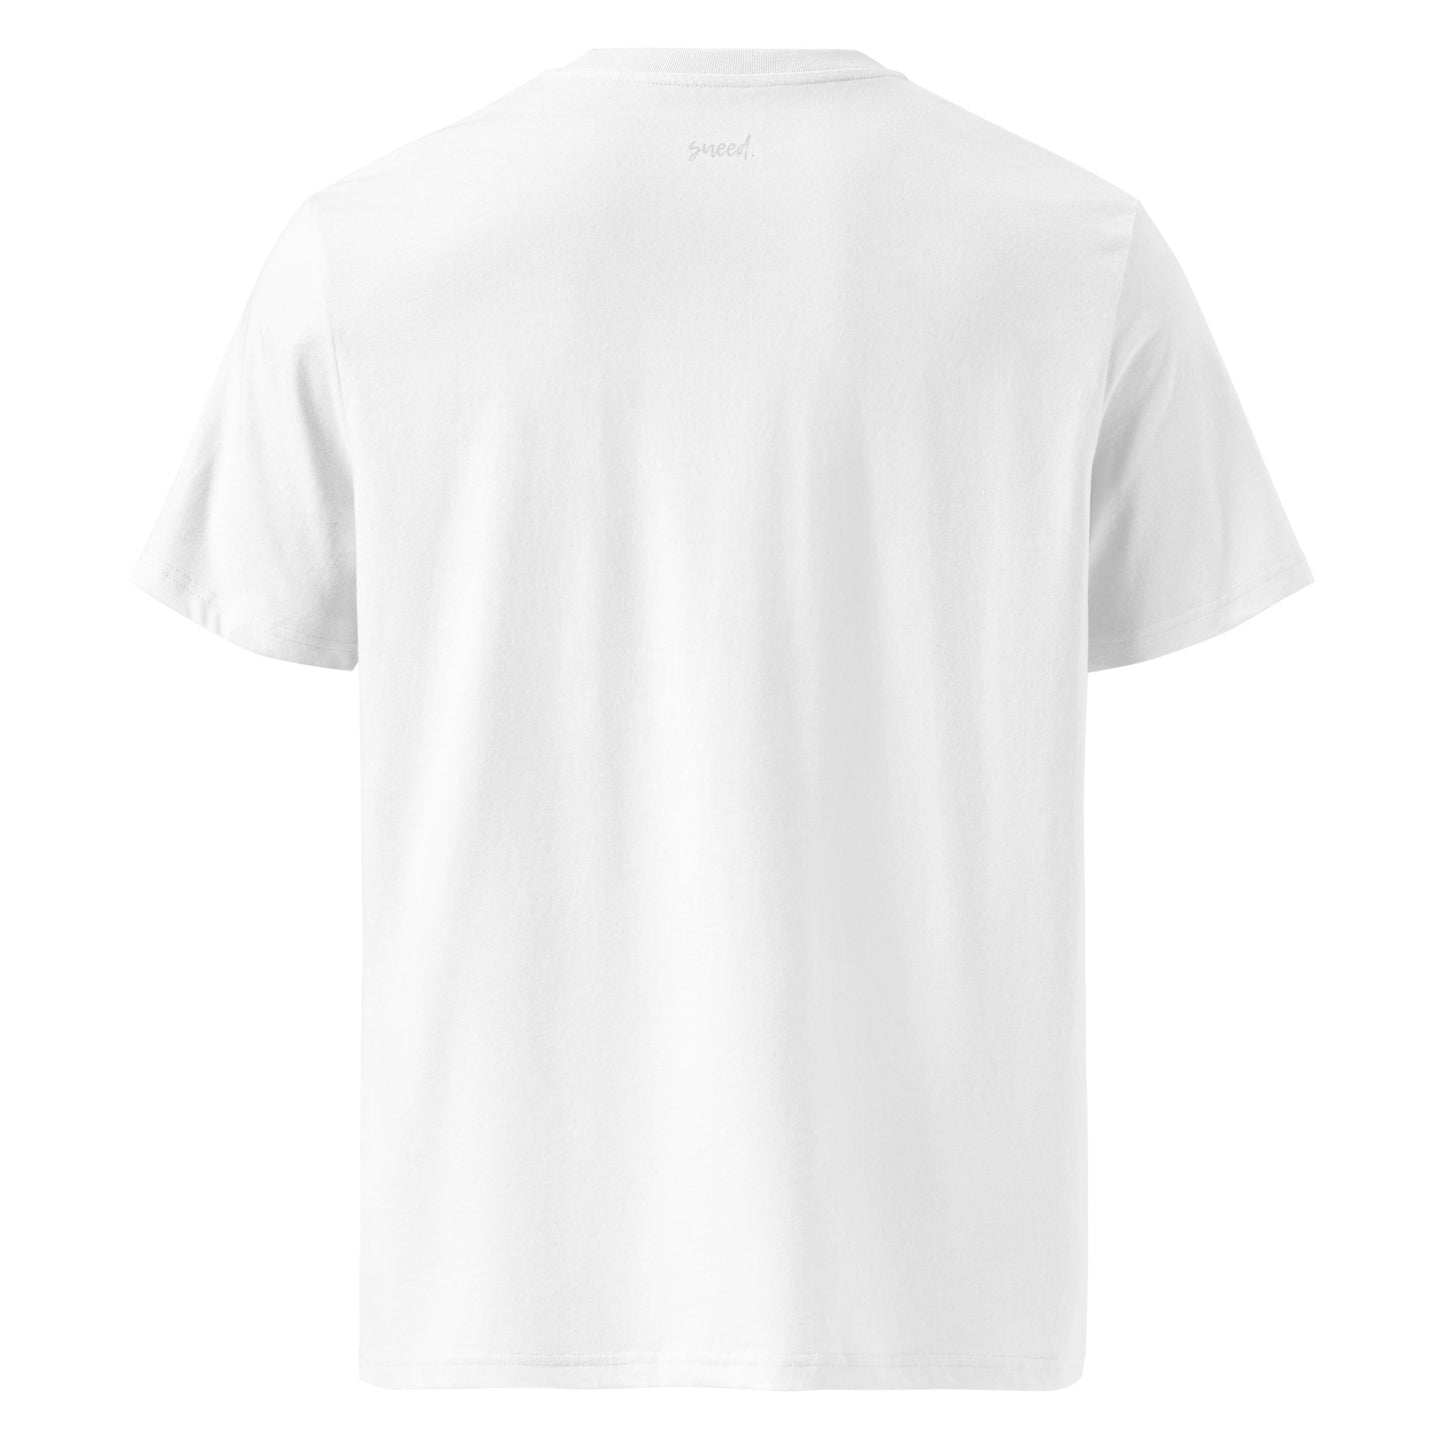 sueed. organic cotton t-shirt - a brief love affair.